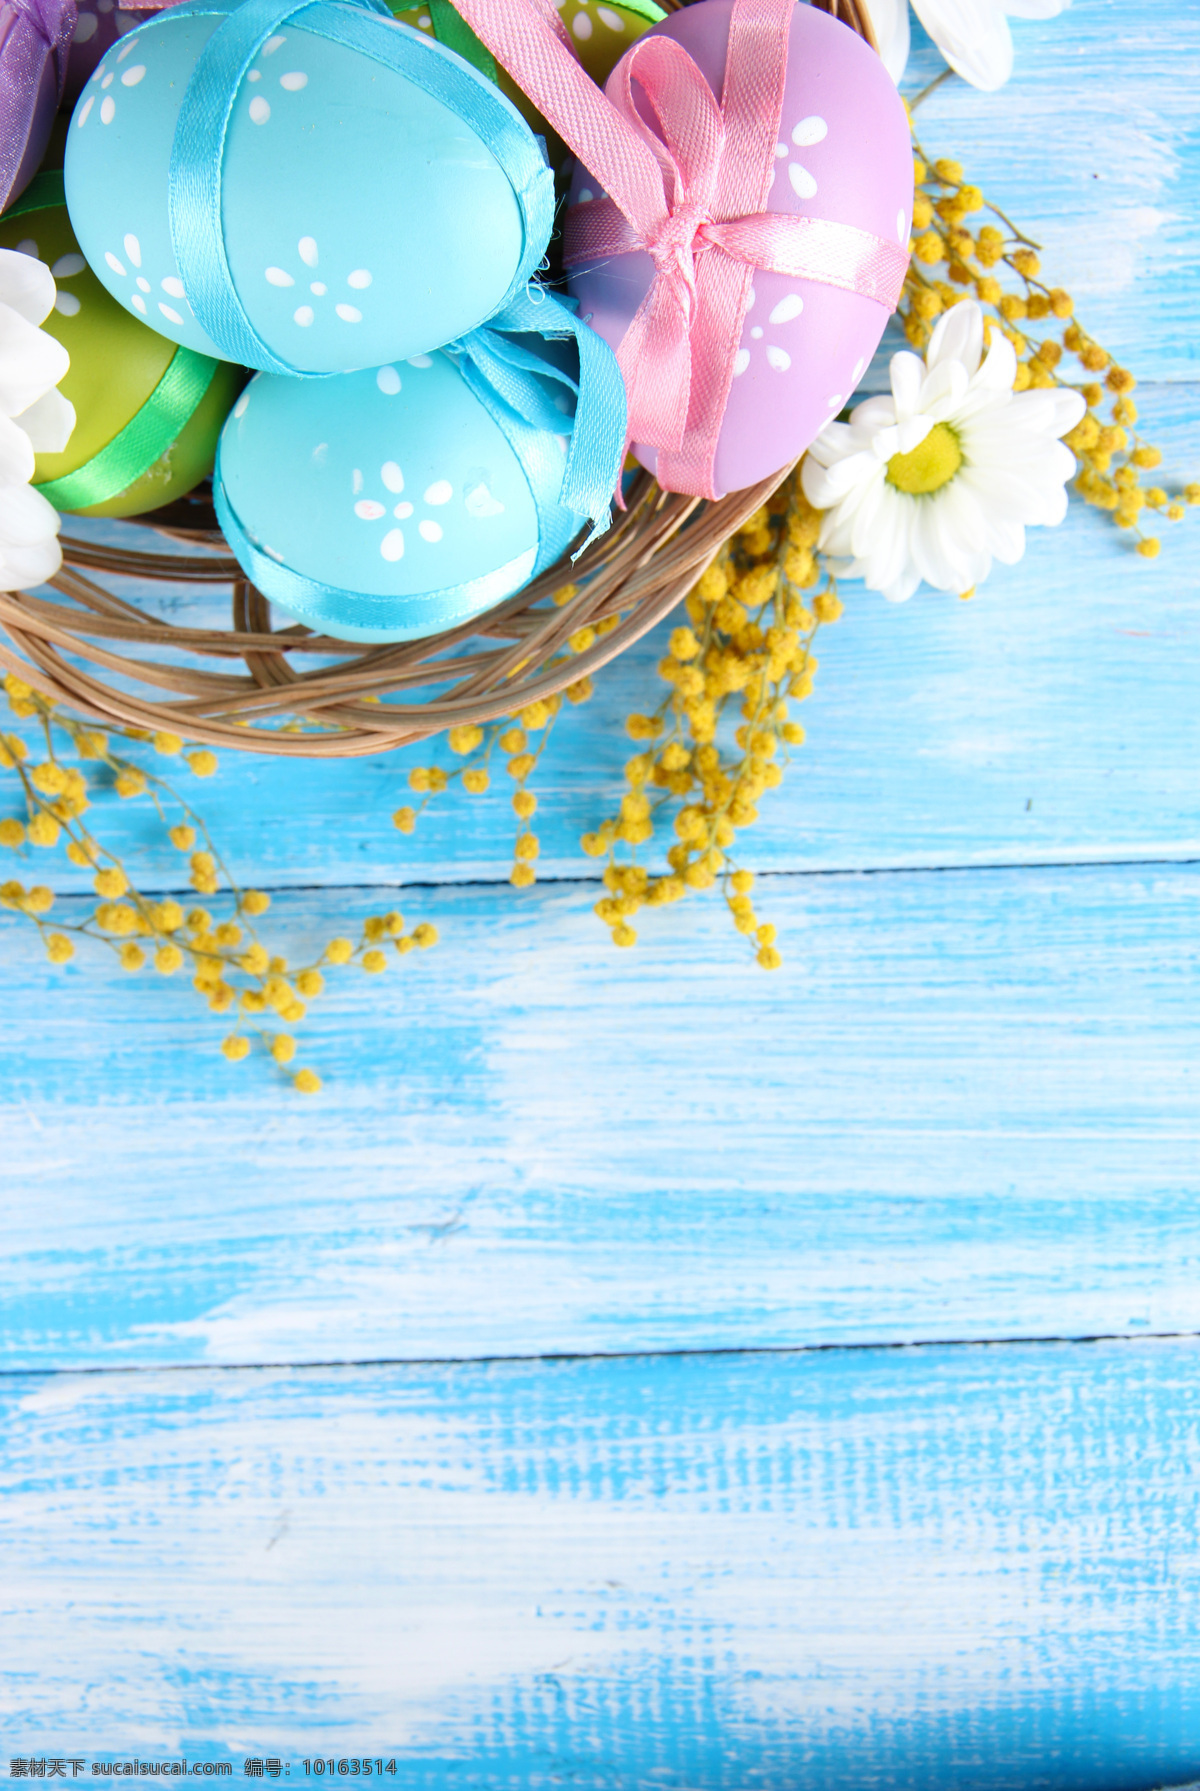 木板 上 复活节 彩蛋 篮子 鲜花 蝴蝶结 节日庆典 生活百科